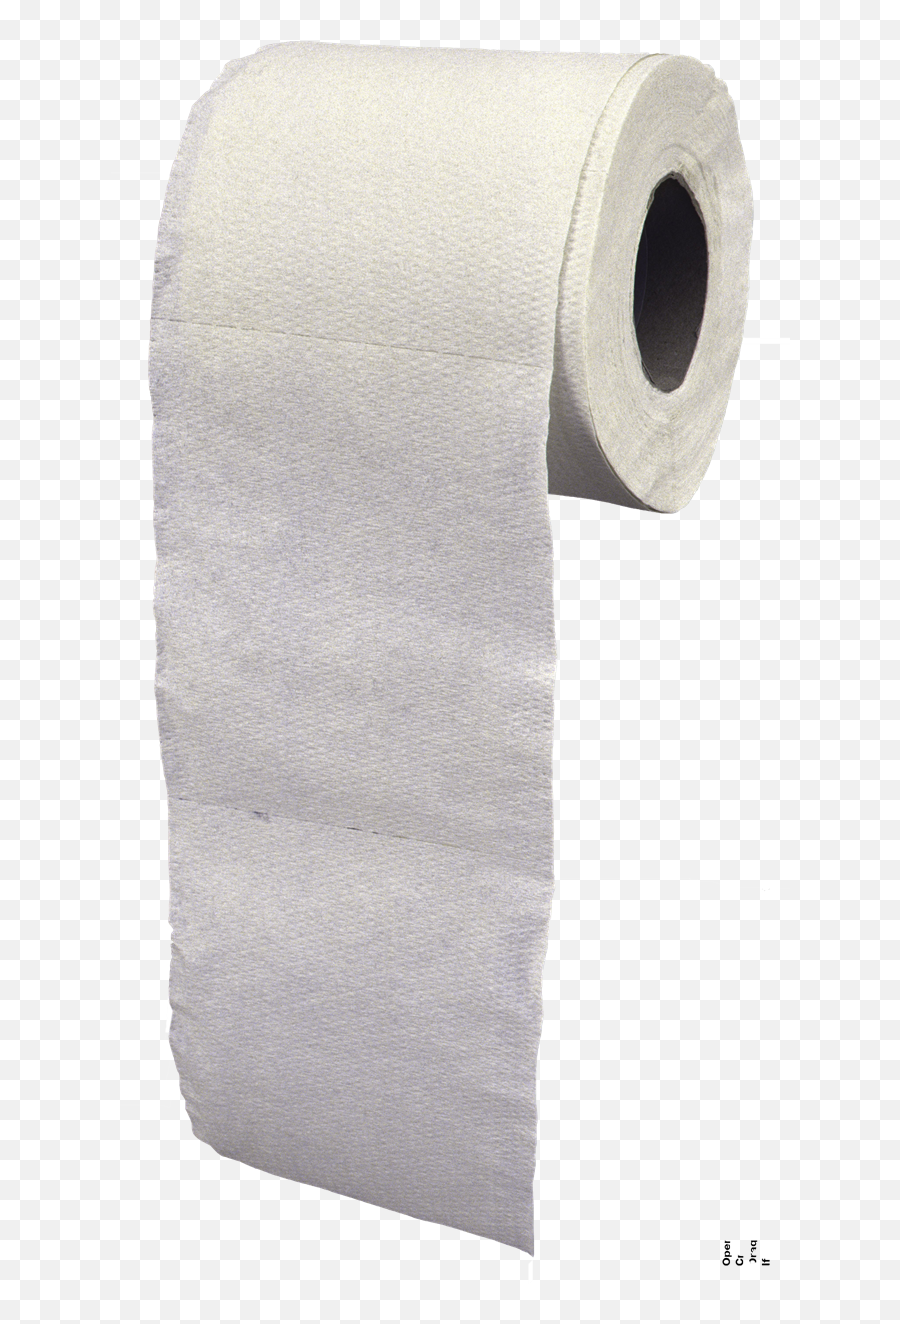 Toilet Paper Png Transparent Images - Toilet Paper Roll Png,Toilet Paper Png